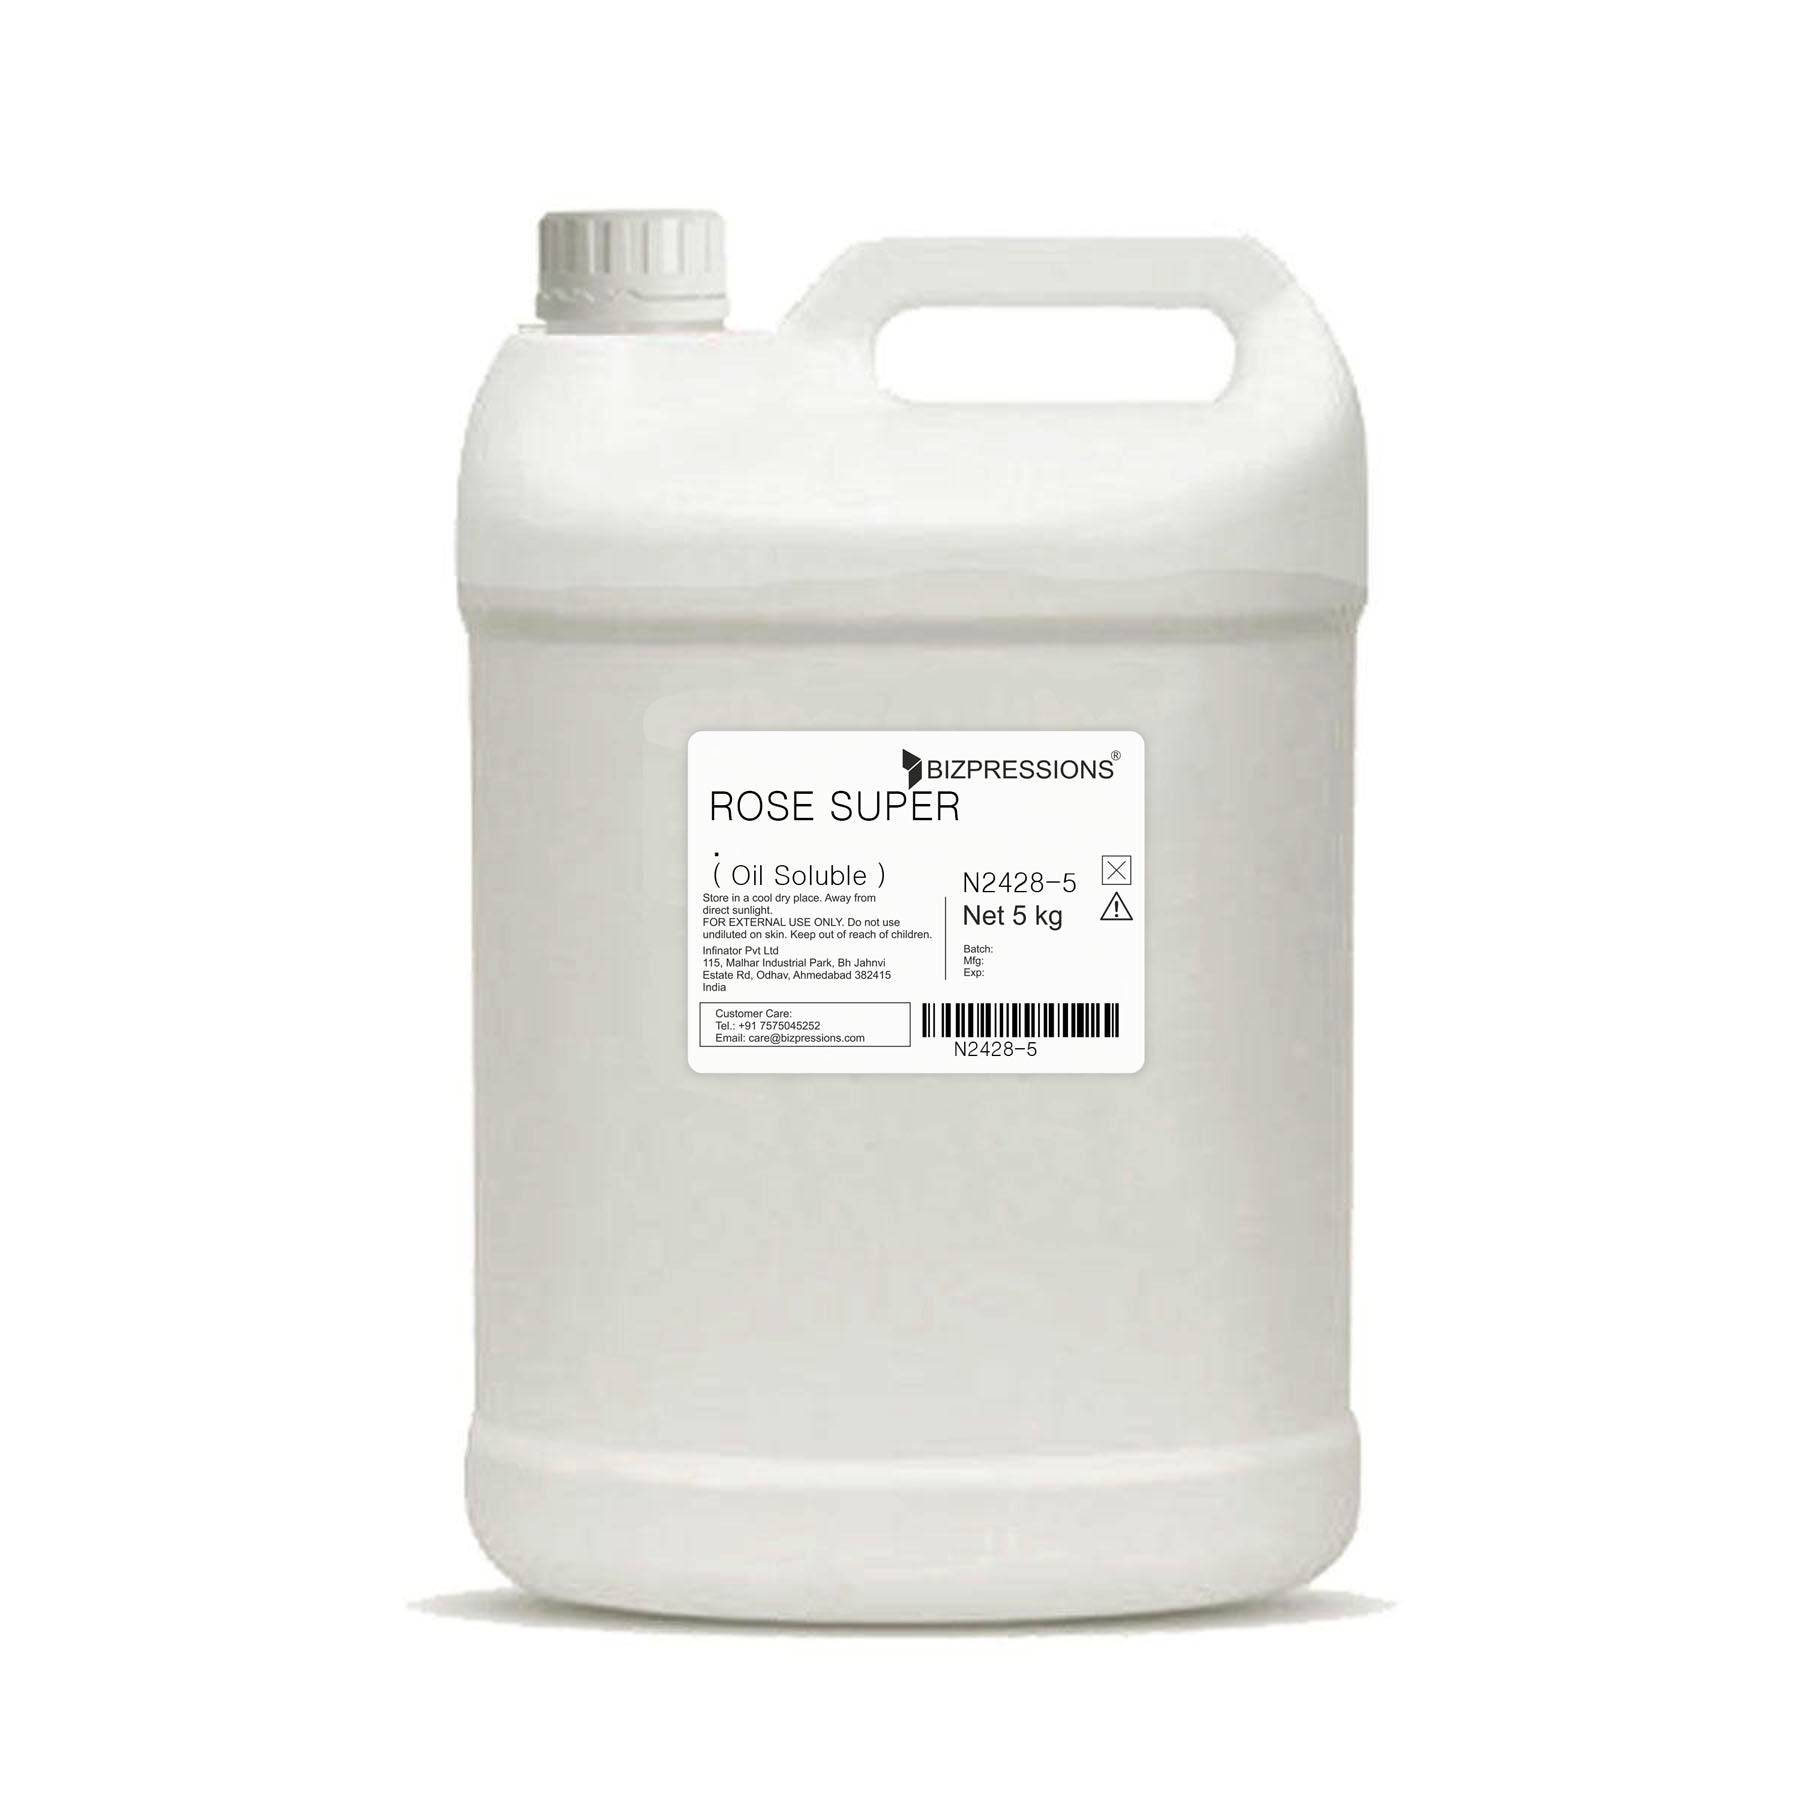 ROSE SUPER - Fragrance ( Oil Soluble ) - 5 kg